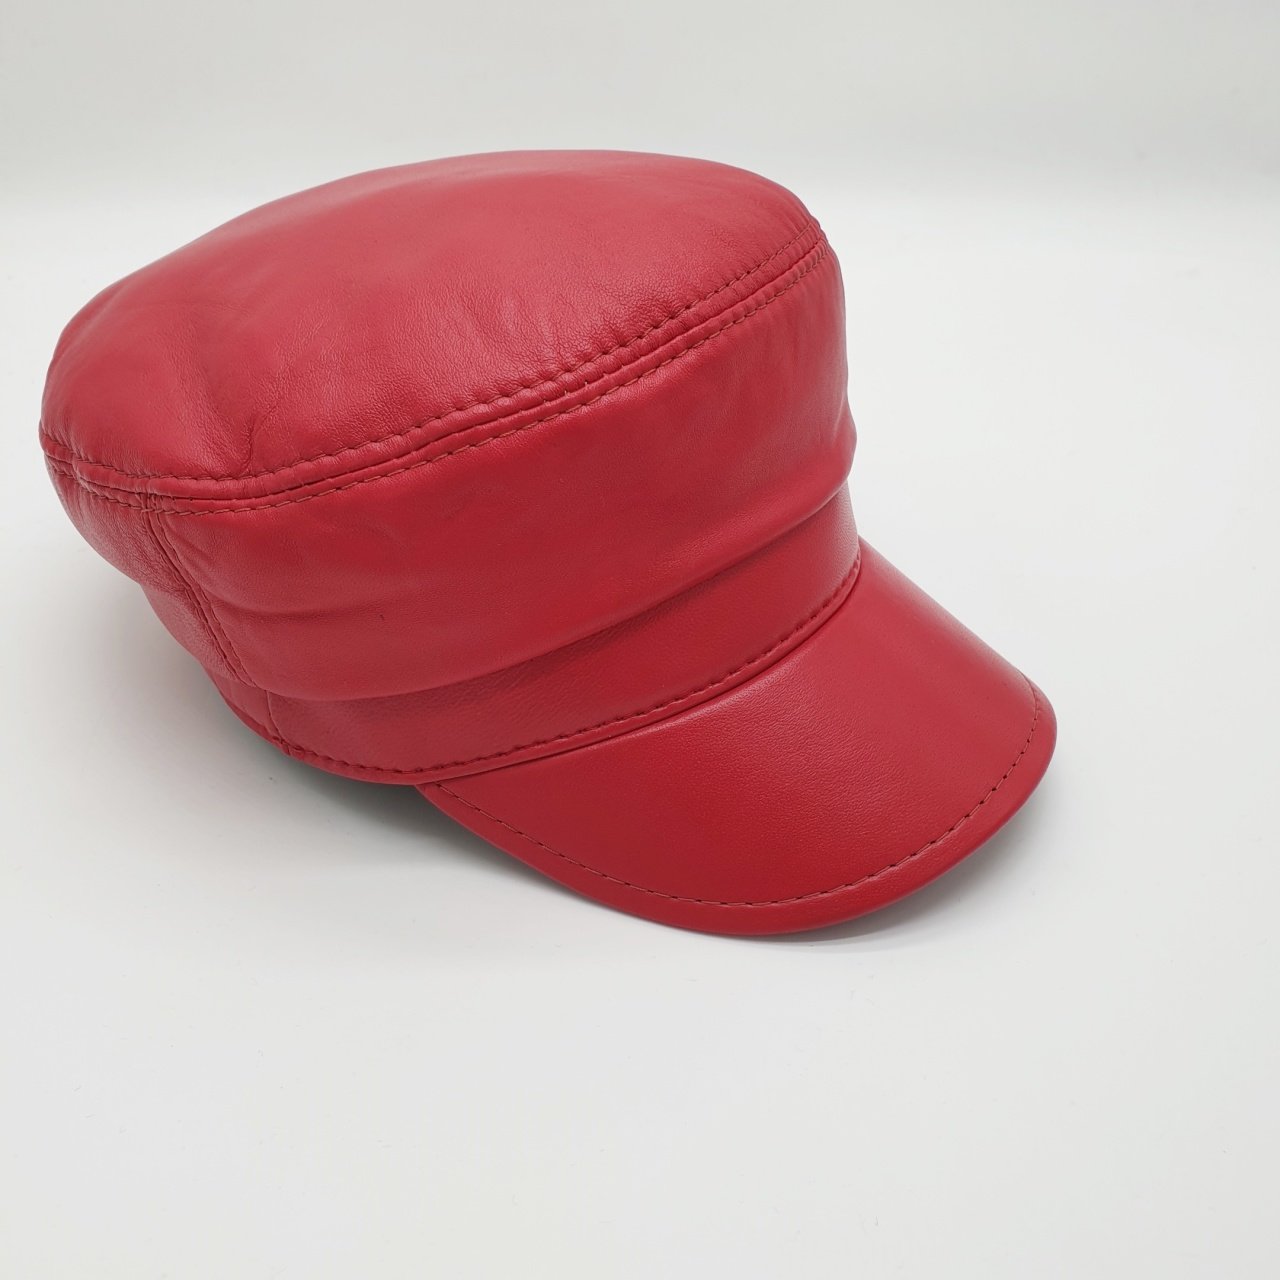 Bayan Deri Şapka Arkası Lastikli Kırmızı Renk